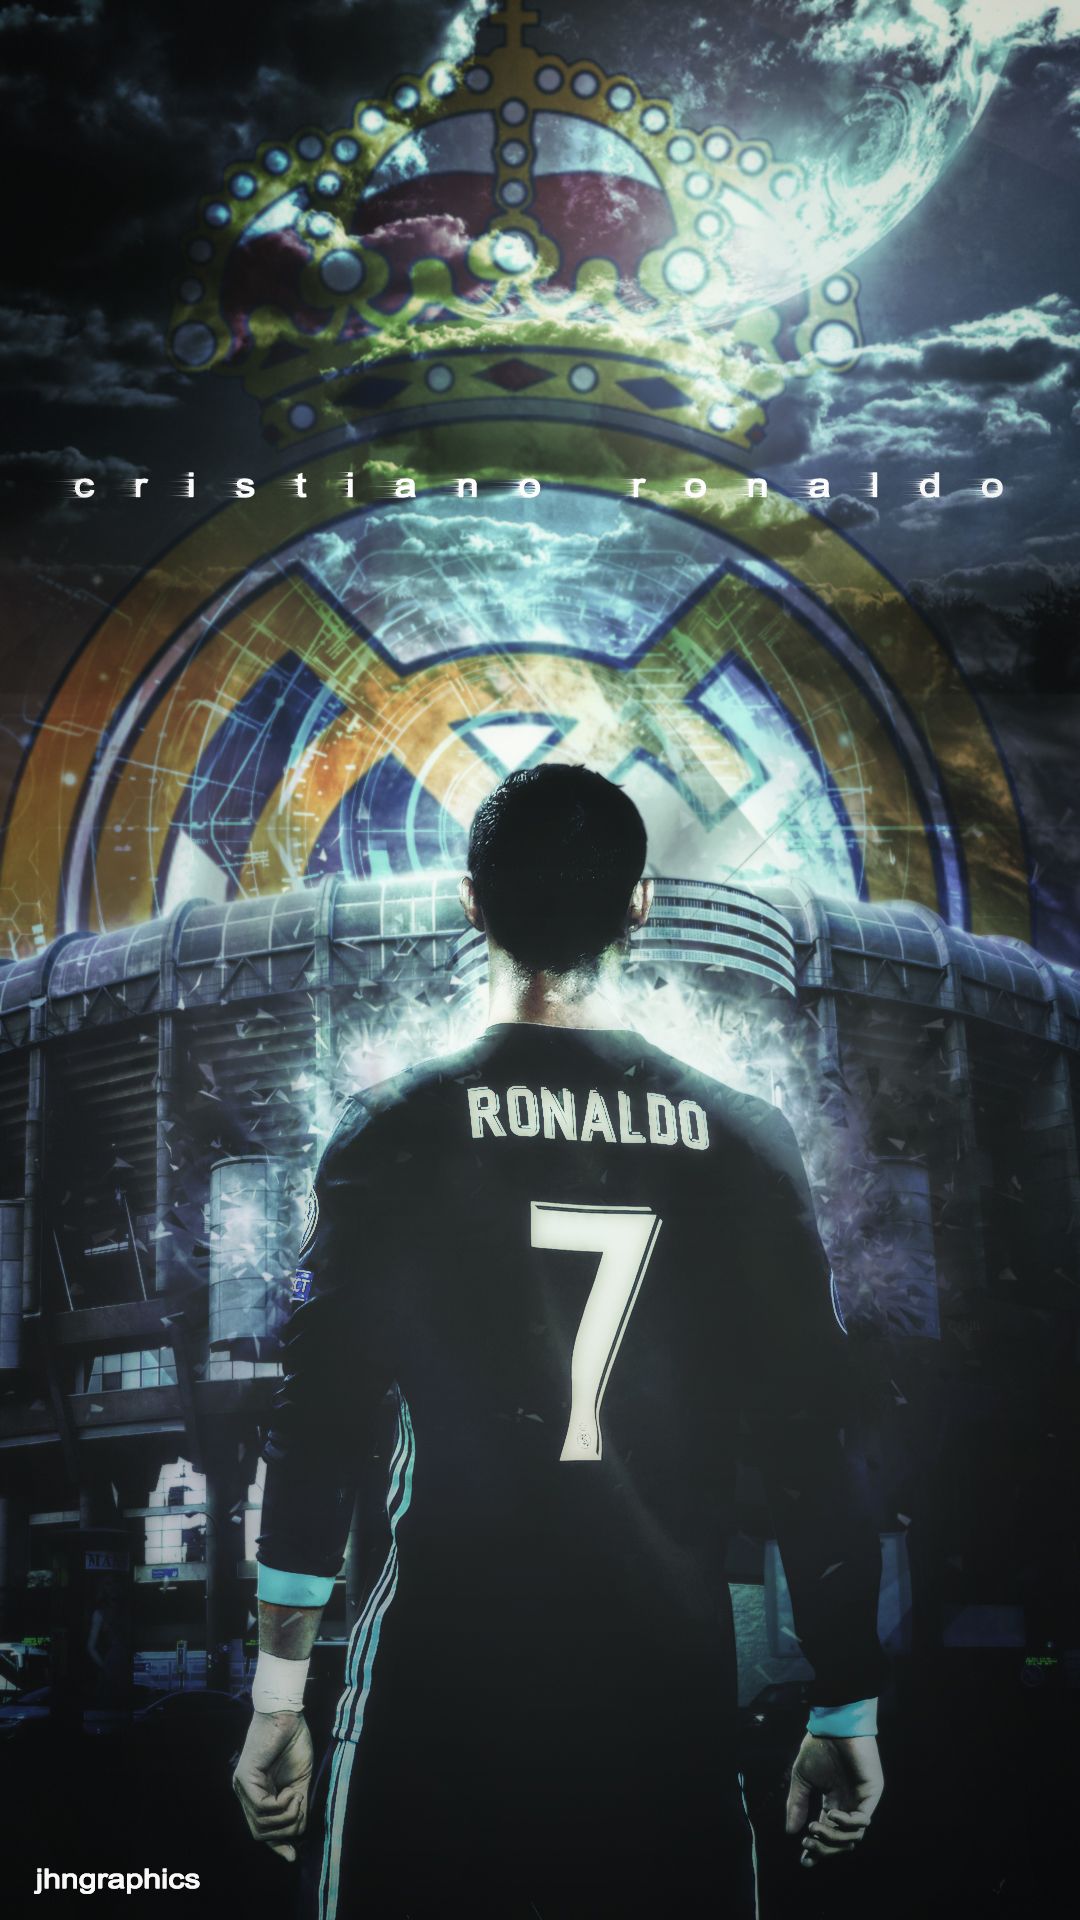 Fondos de Cristiano Ronaldo en Behance